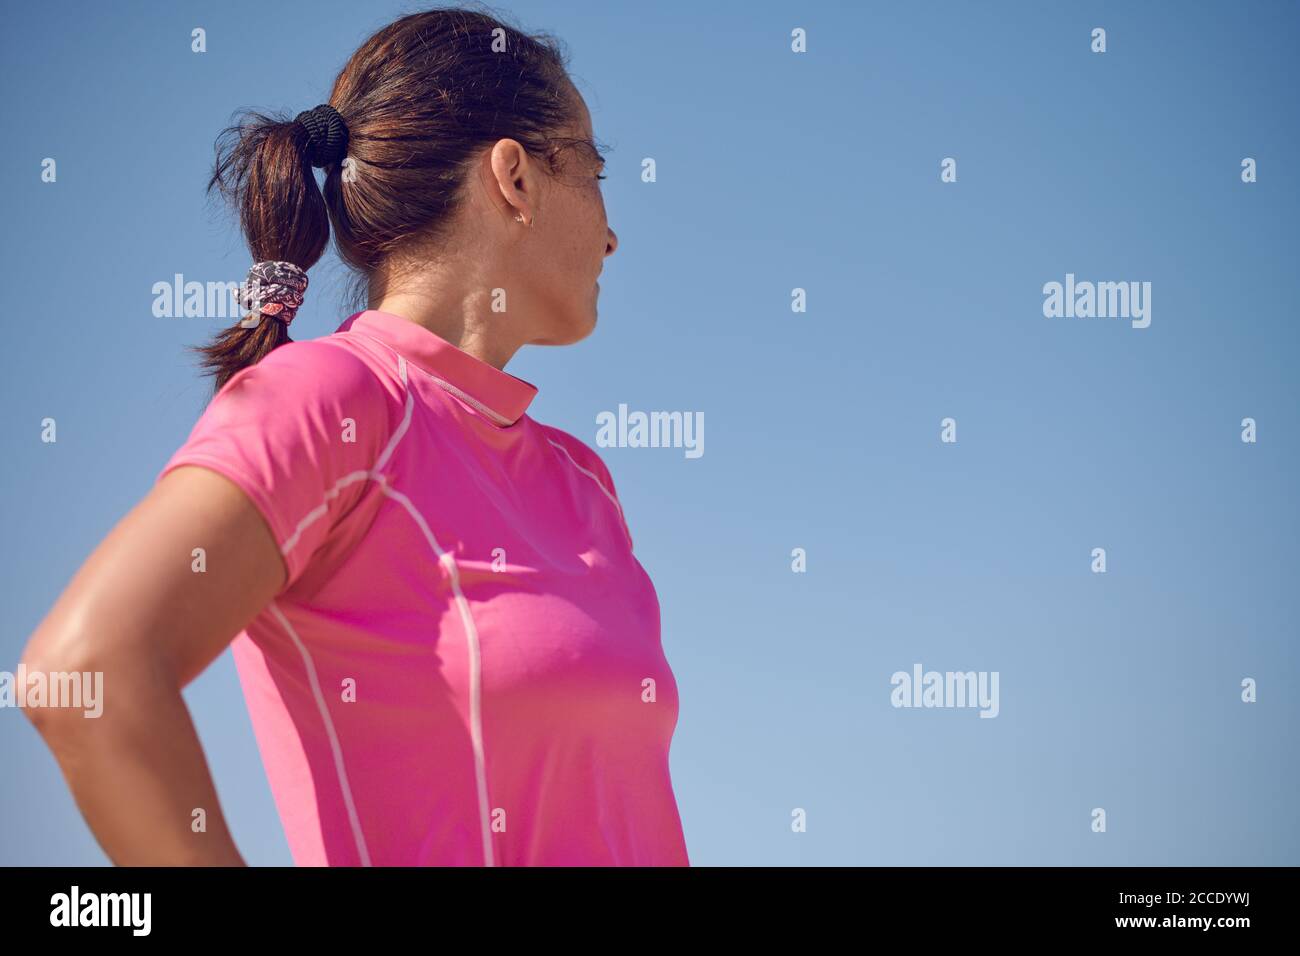 Sportliche Frau mit Pferdeschwanz in einem rosa Top Blick zurück Über ihre Schulter in einem niedrigen Winkel Ansicht gegen ein Klarer, sonniger blauer Himmel Stockfoto